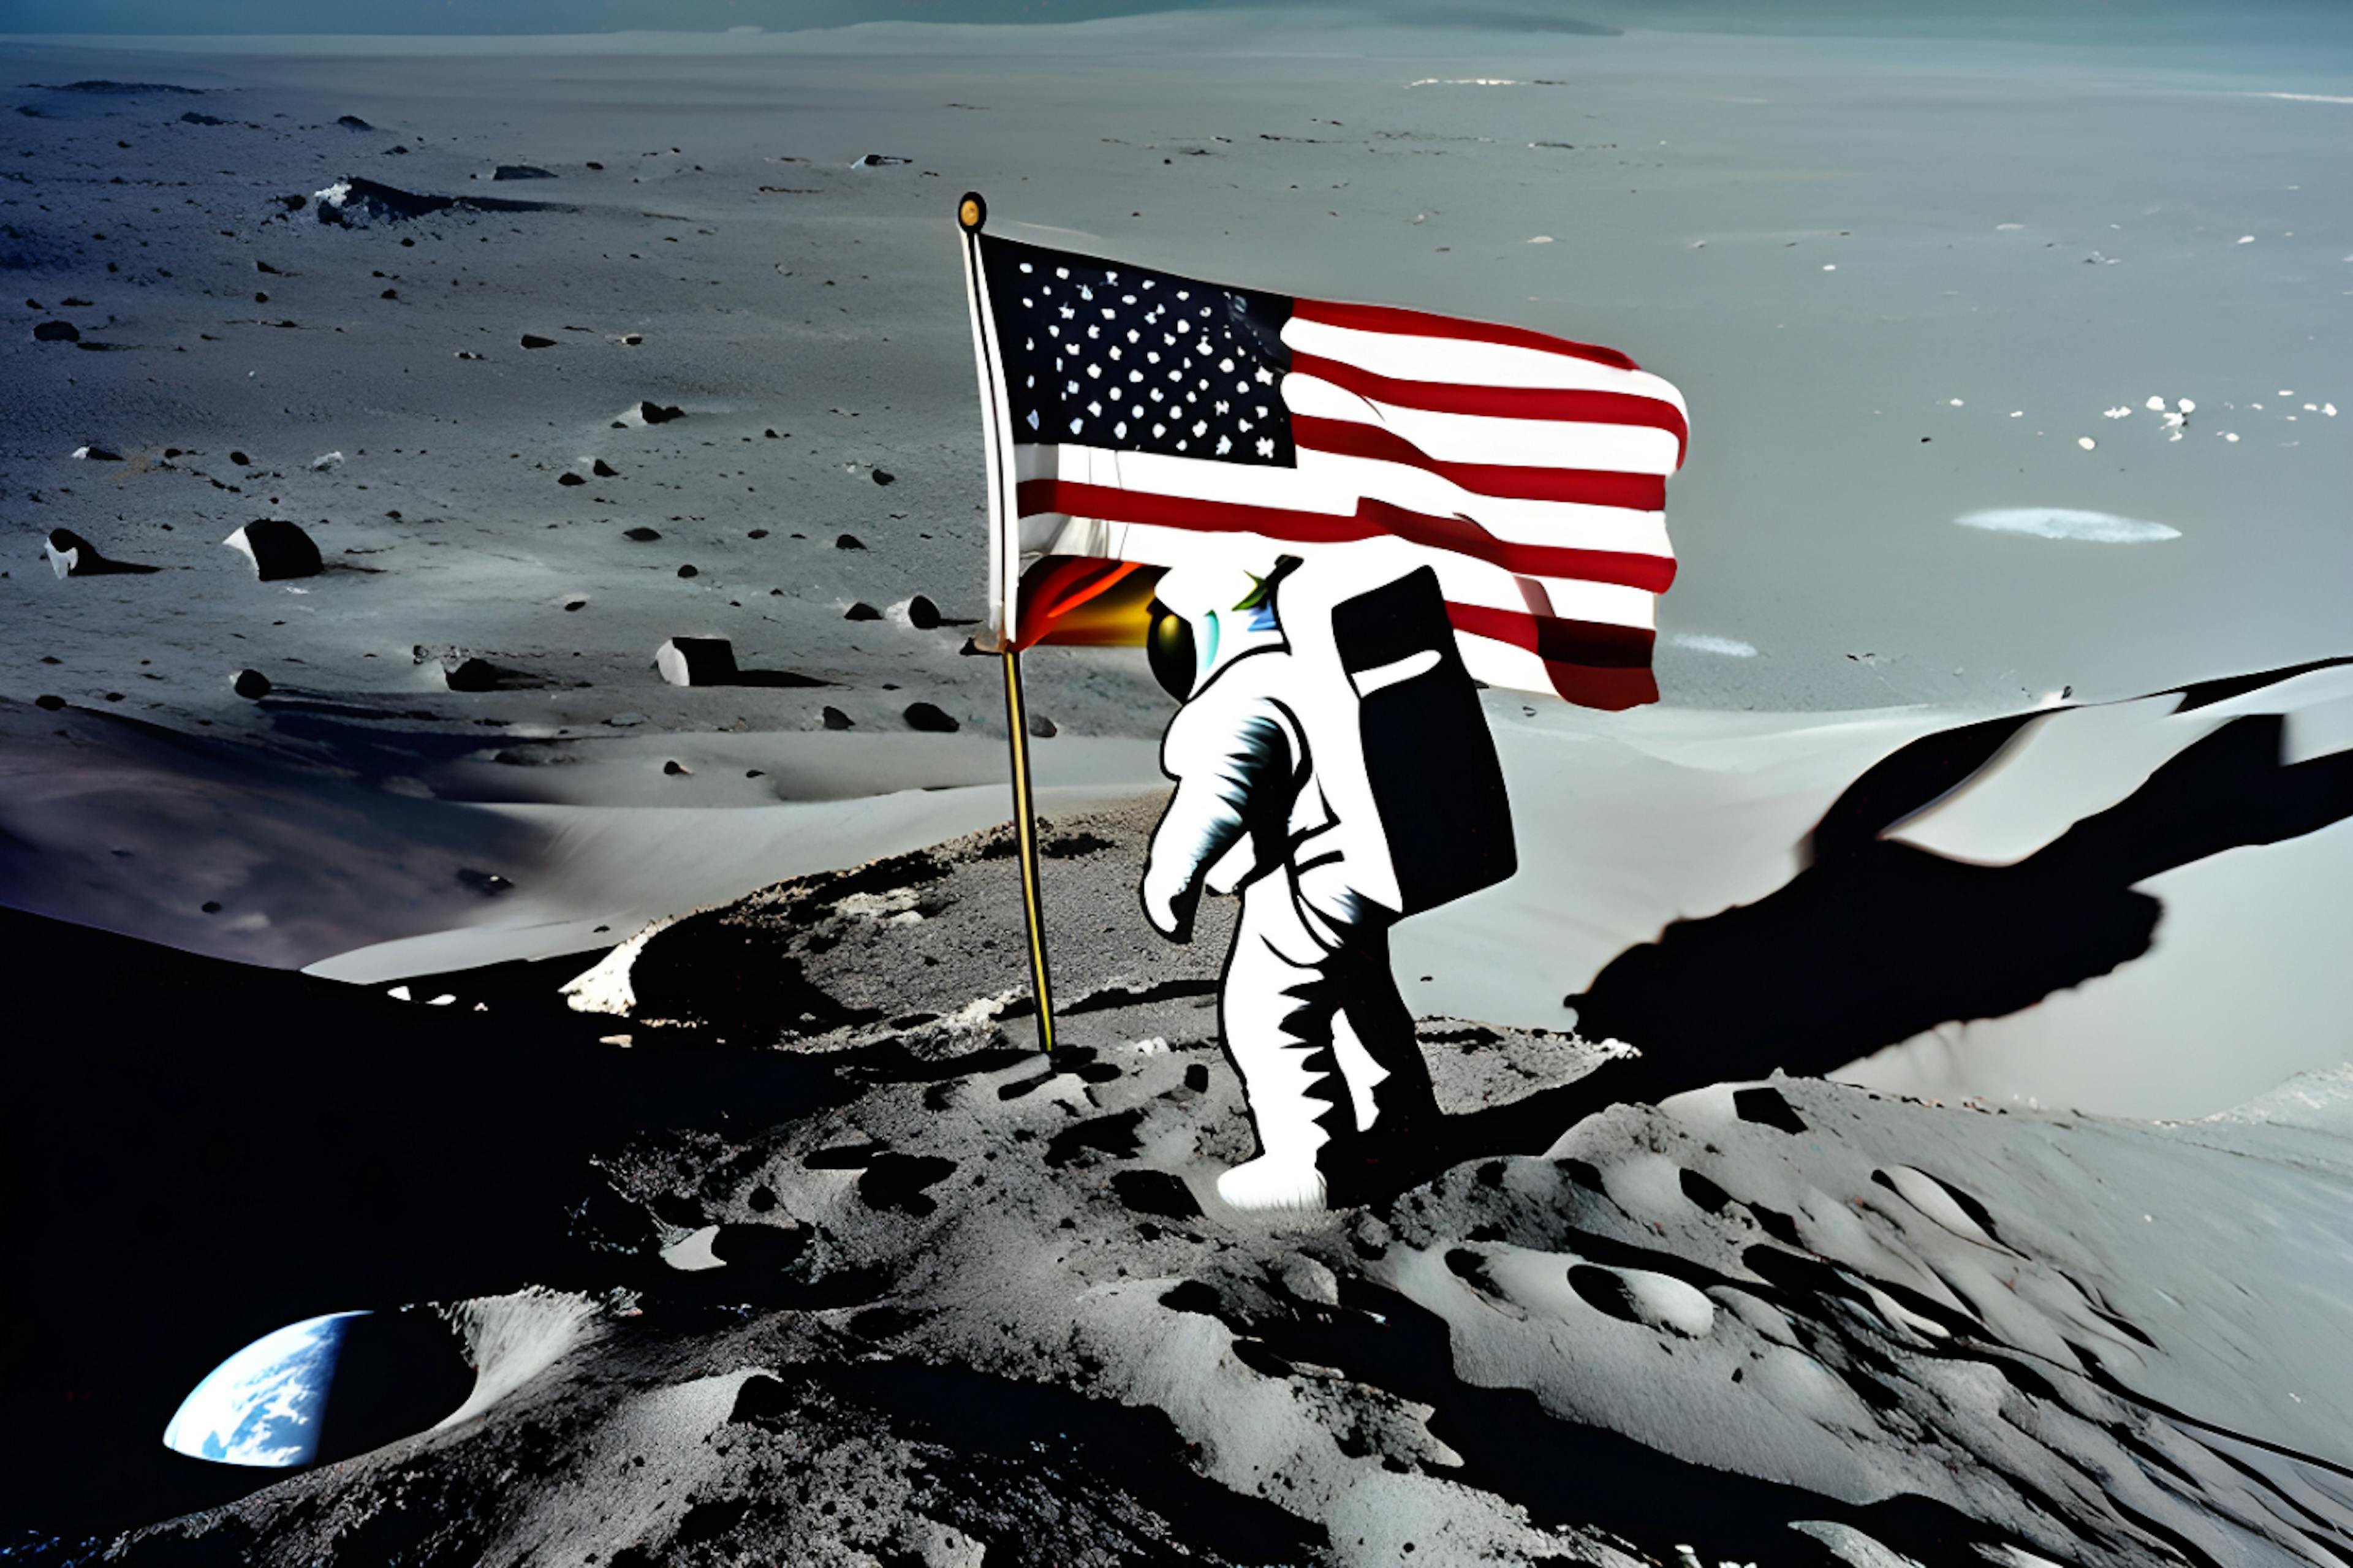 featured image - Gobernanza espacial: Estados Unidos allana el camino para una exploración cislunar responsable y sostenible